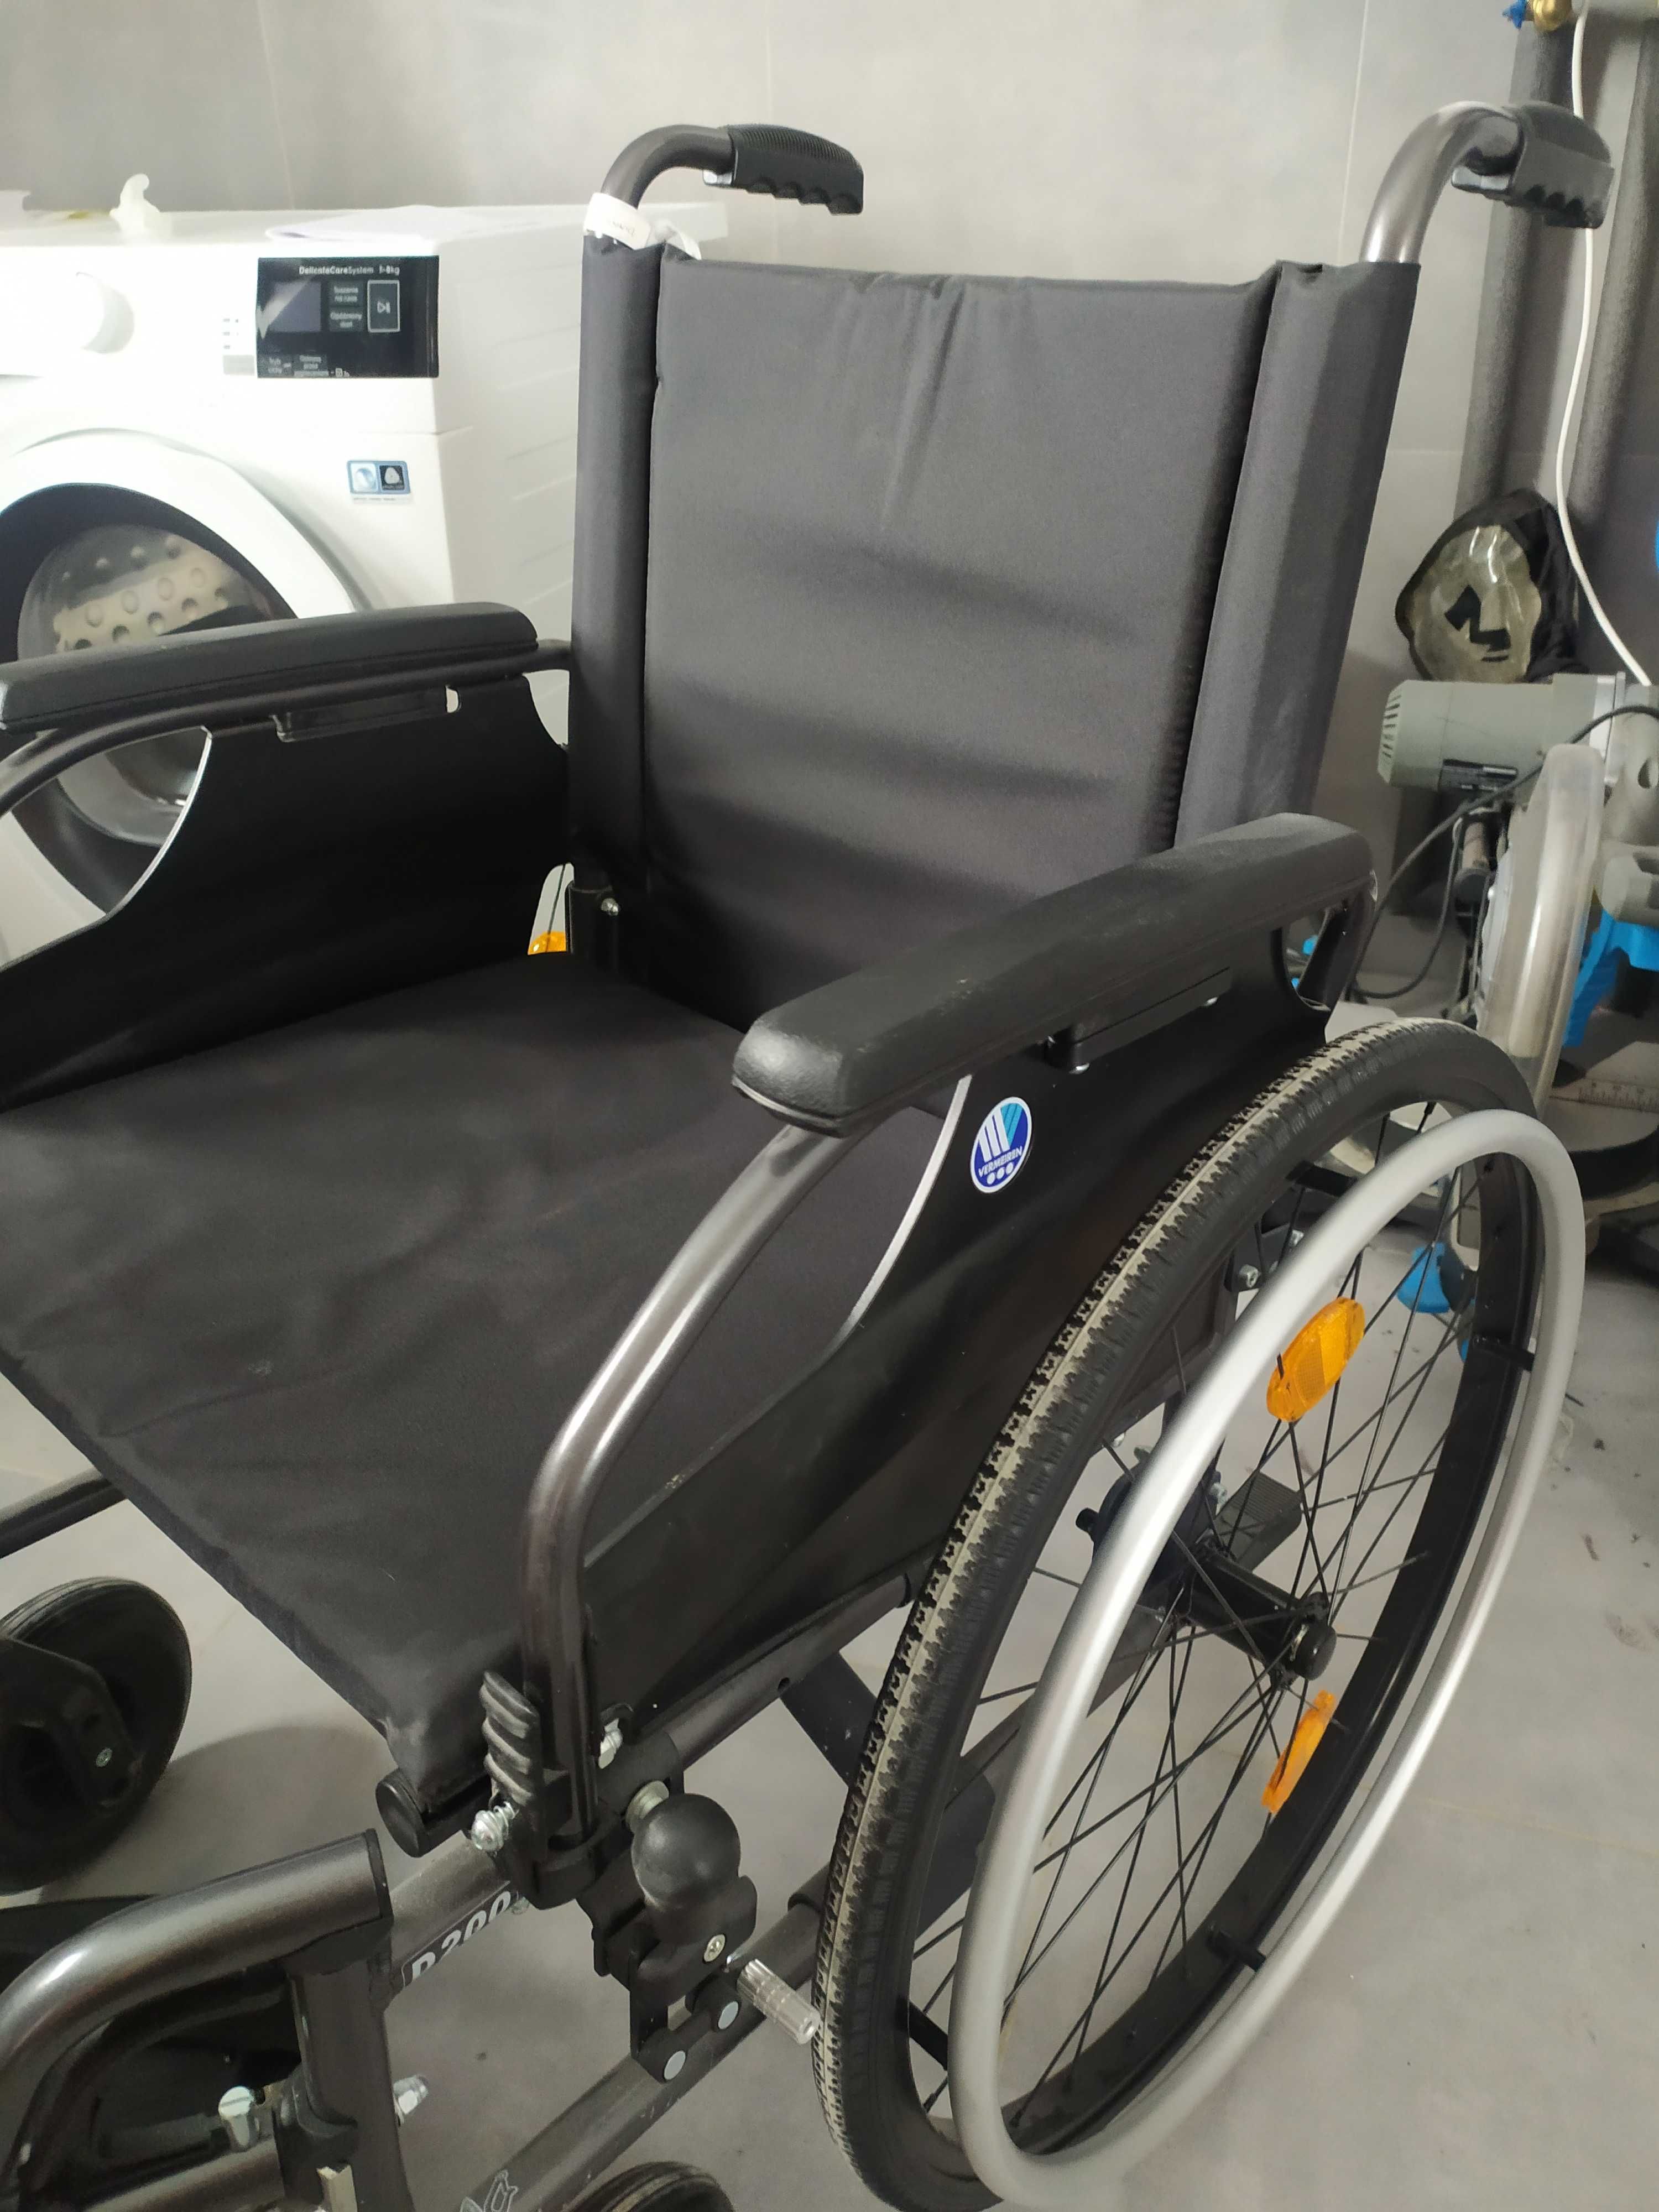 Wózek inwalidzki Vermeiren D200